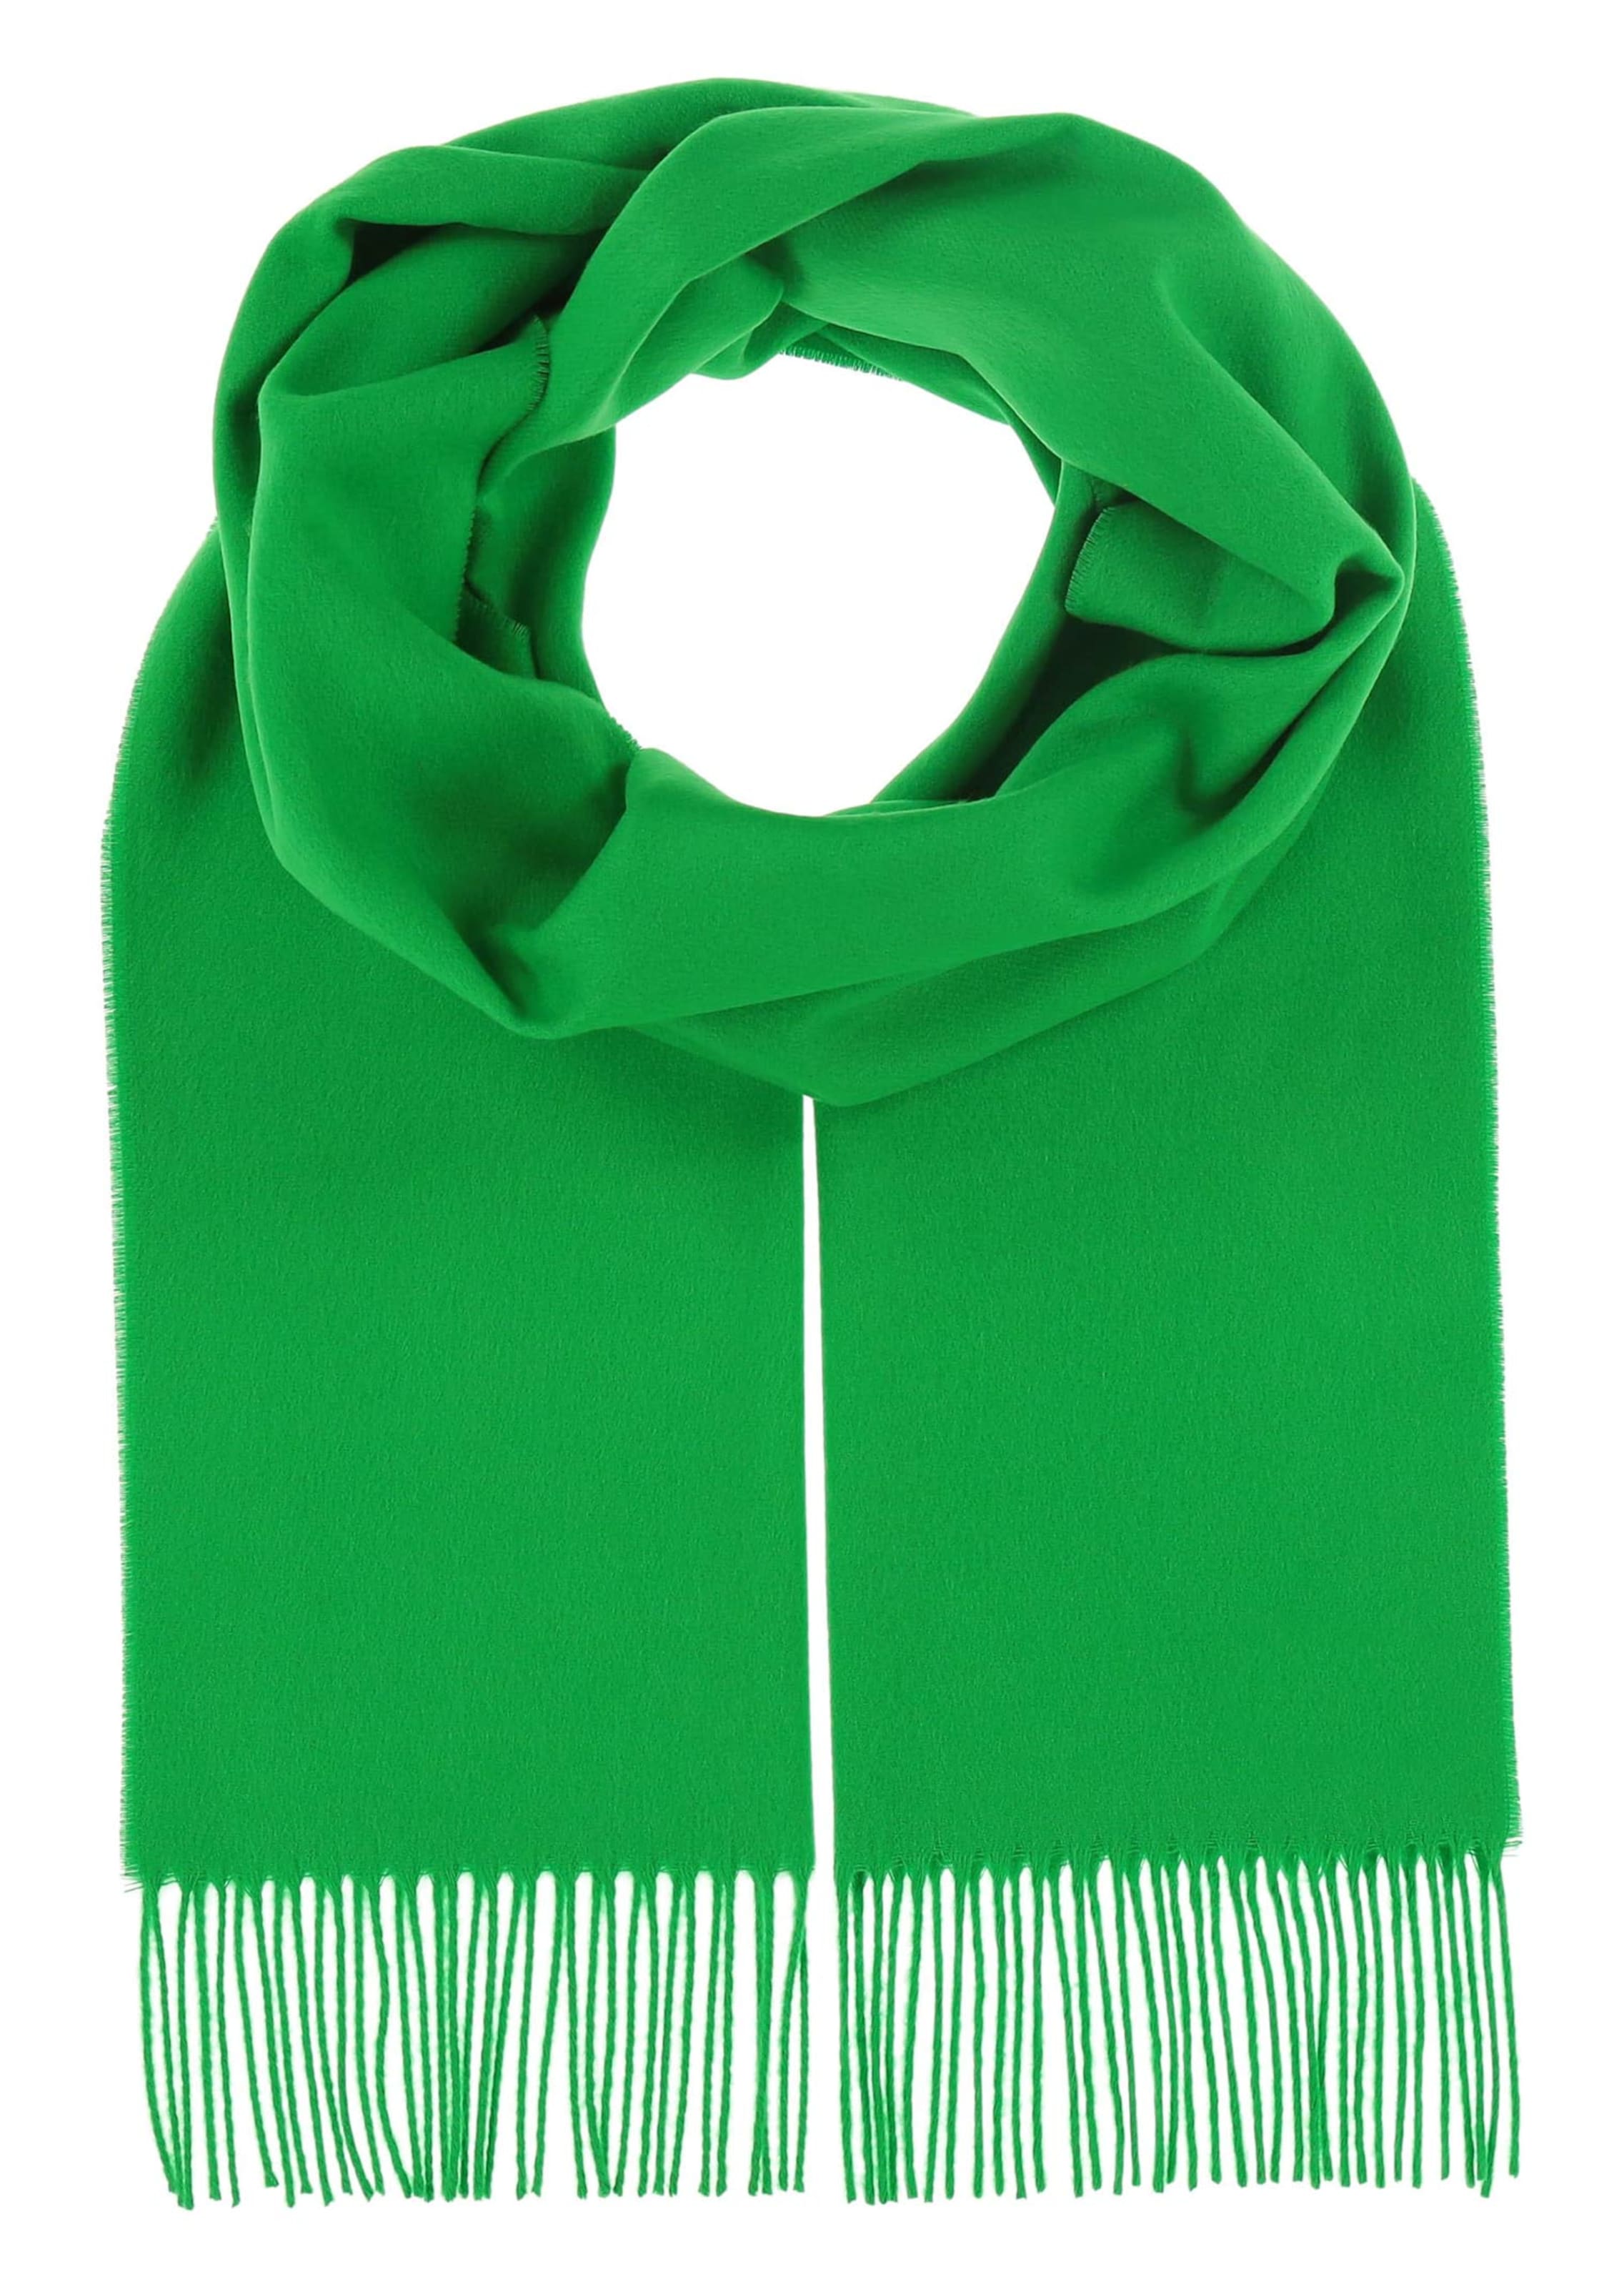 Echarpe toucher cachemire - vert - Gr. 0 de Goldner Fashion